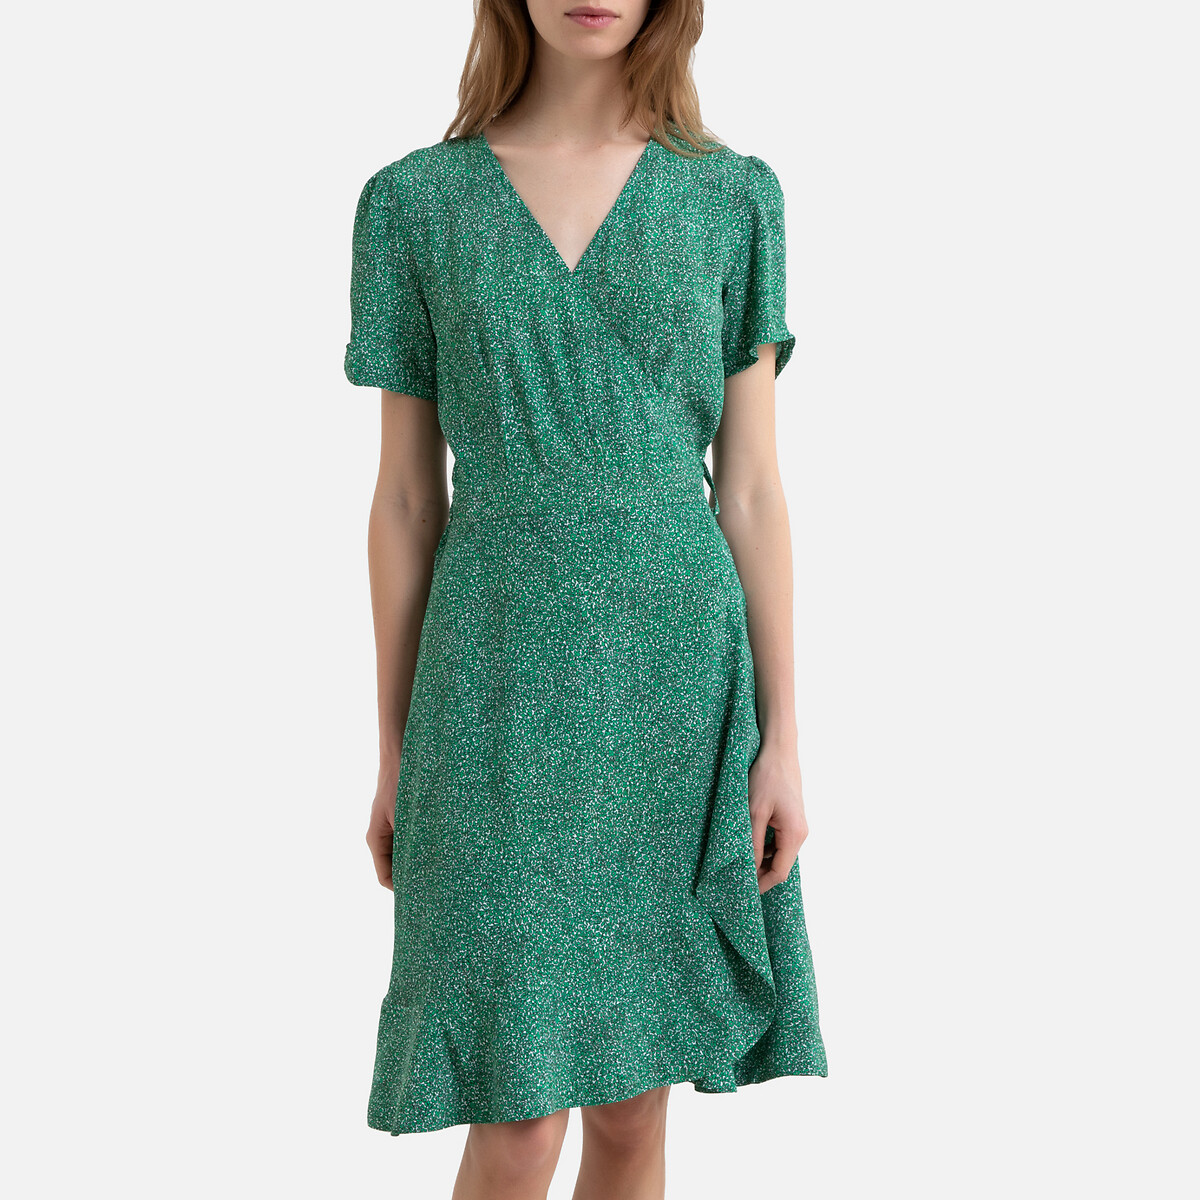 Платье La Redoute С запахом с короткими рукавами PERRINE 36 (FR) - 42 (RUS) зеленый, размер 36 (FR) - 42 (RUS) С запахом с короткими рукавами PERRINE 36 (FR) - 42 (RUS) зеленый - фото 1